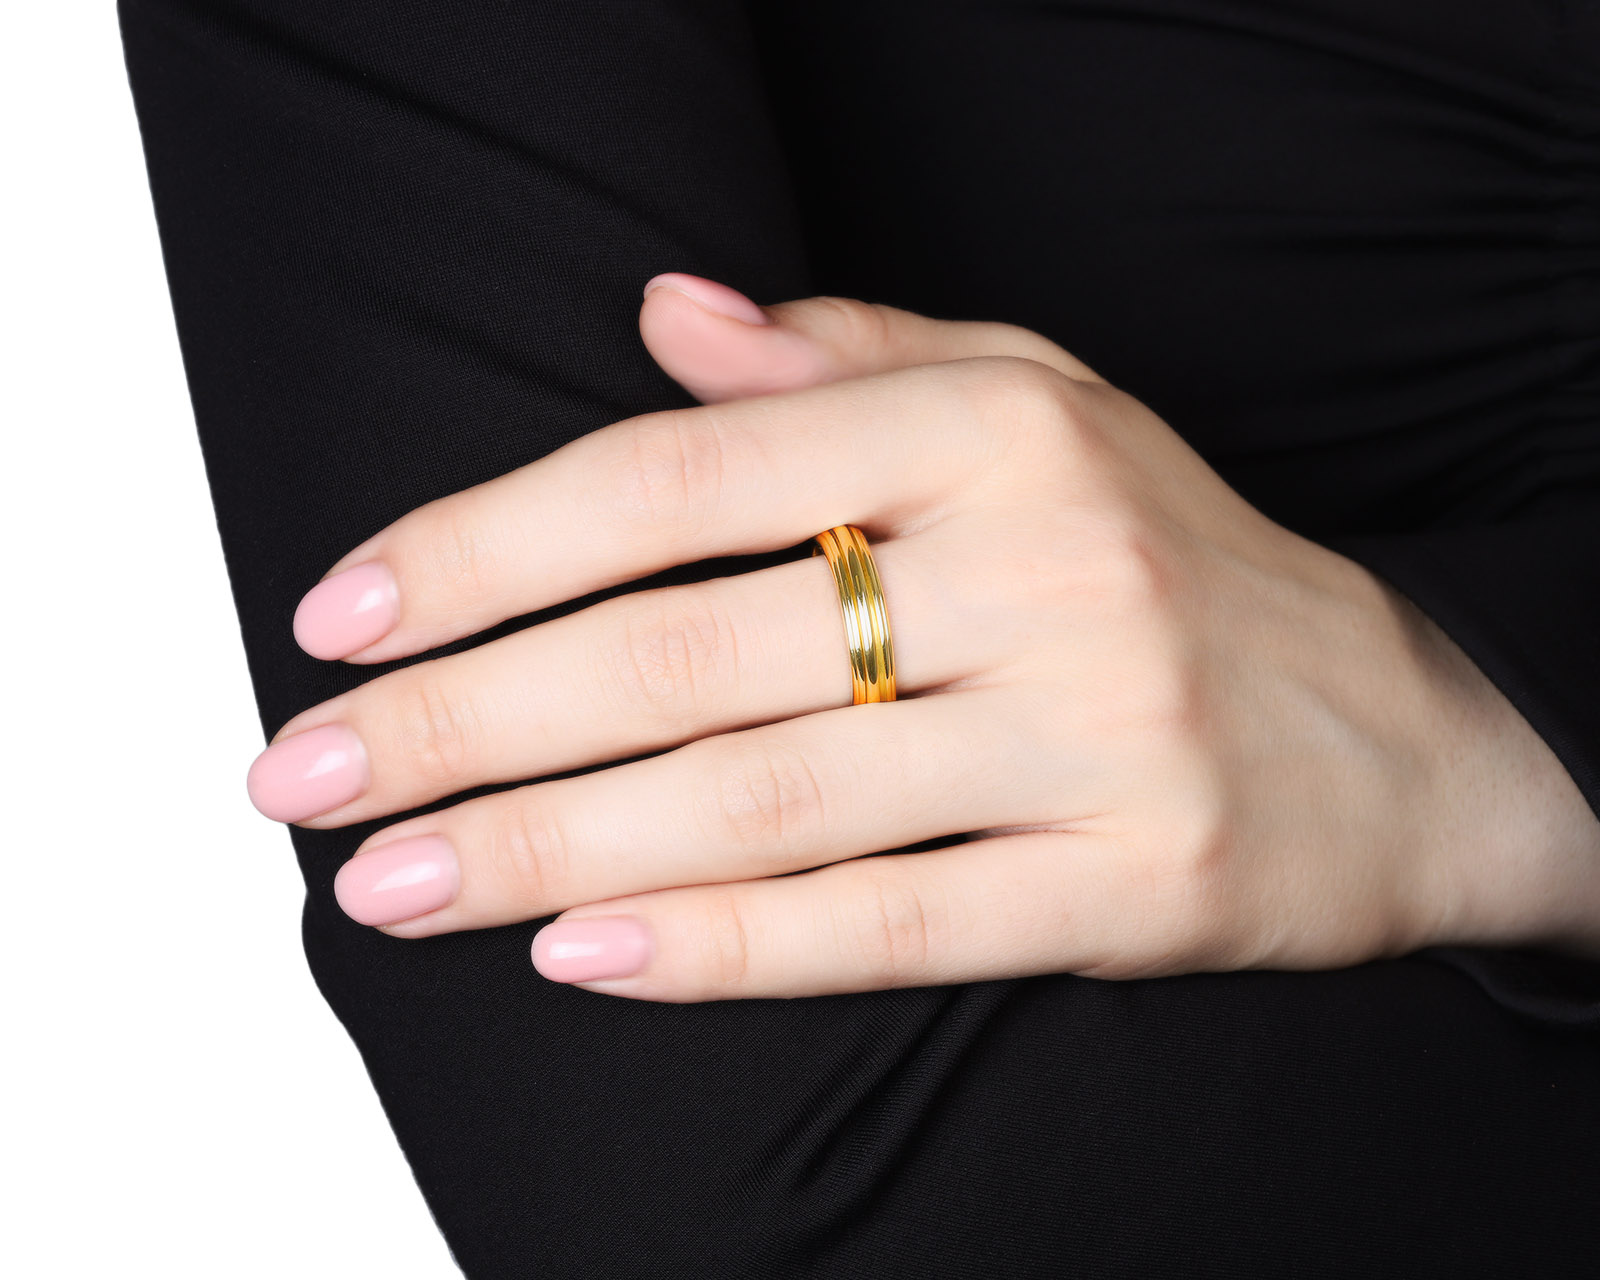 Оригинальное золотое кольцо Piaget Possession